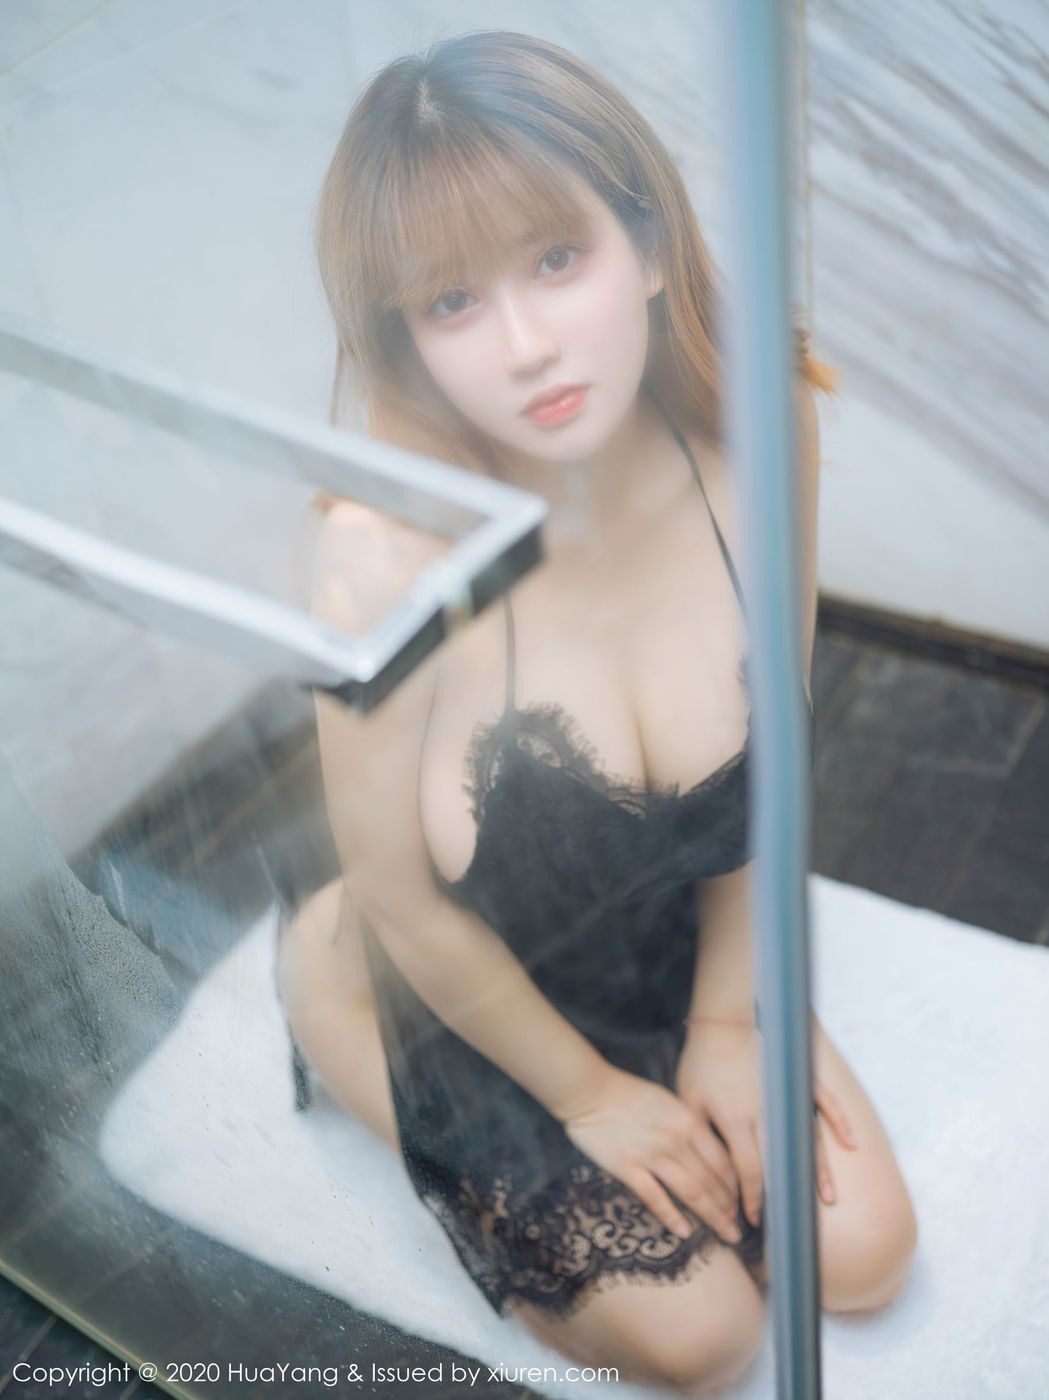 美女模特周大萌惹火身材湿身诱惑浴室系列媚态写真